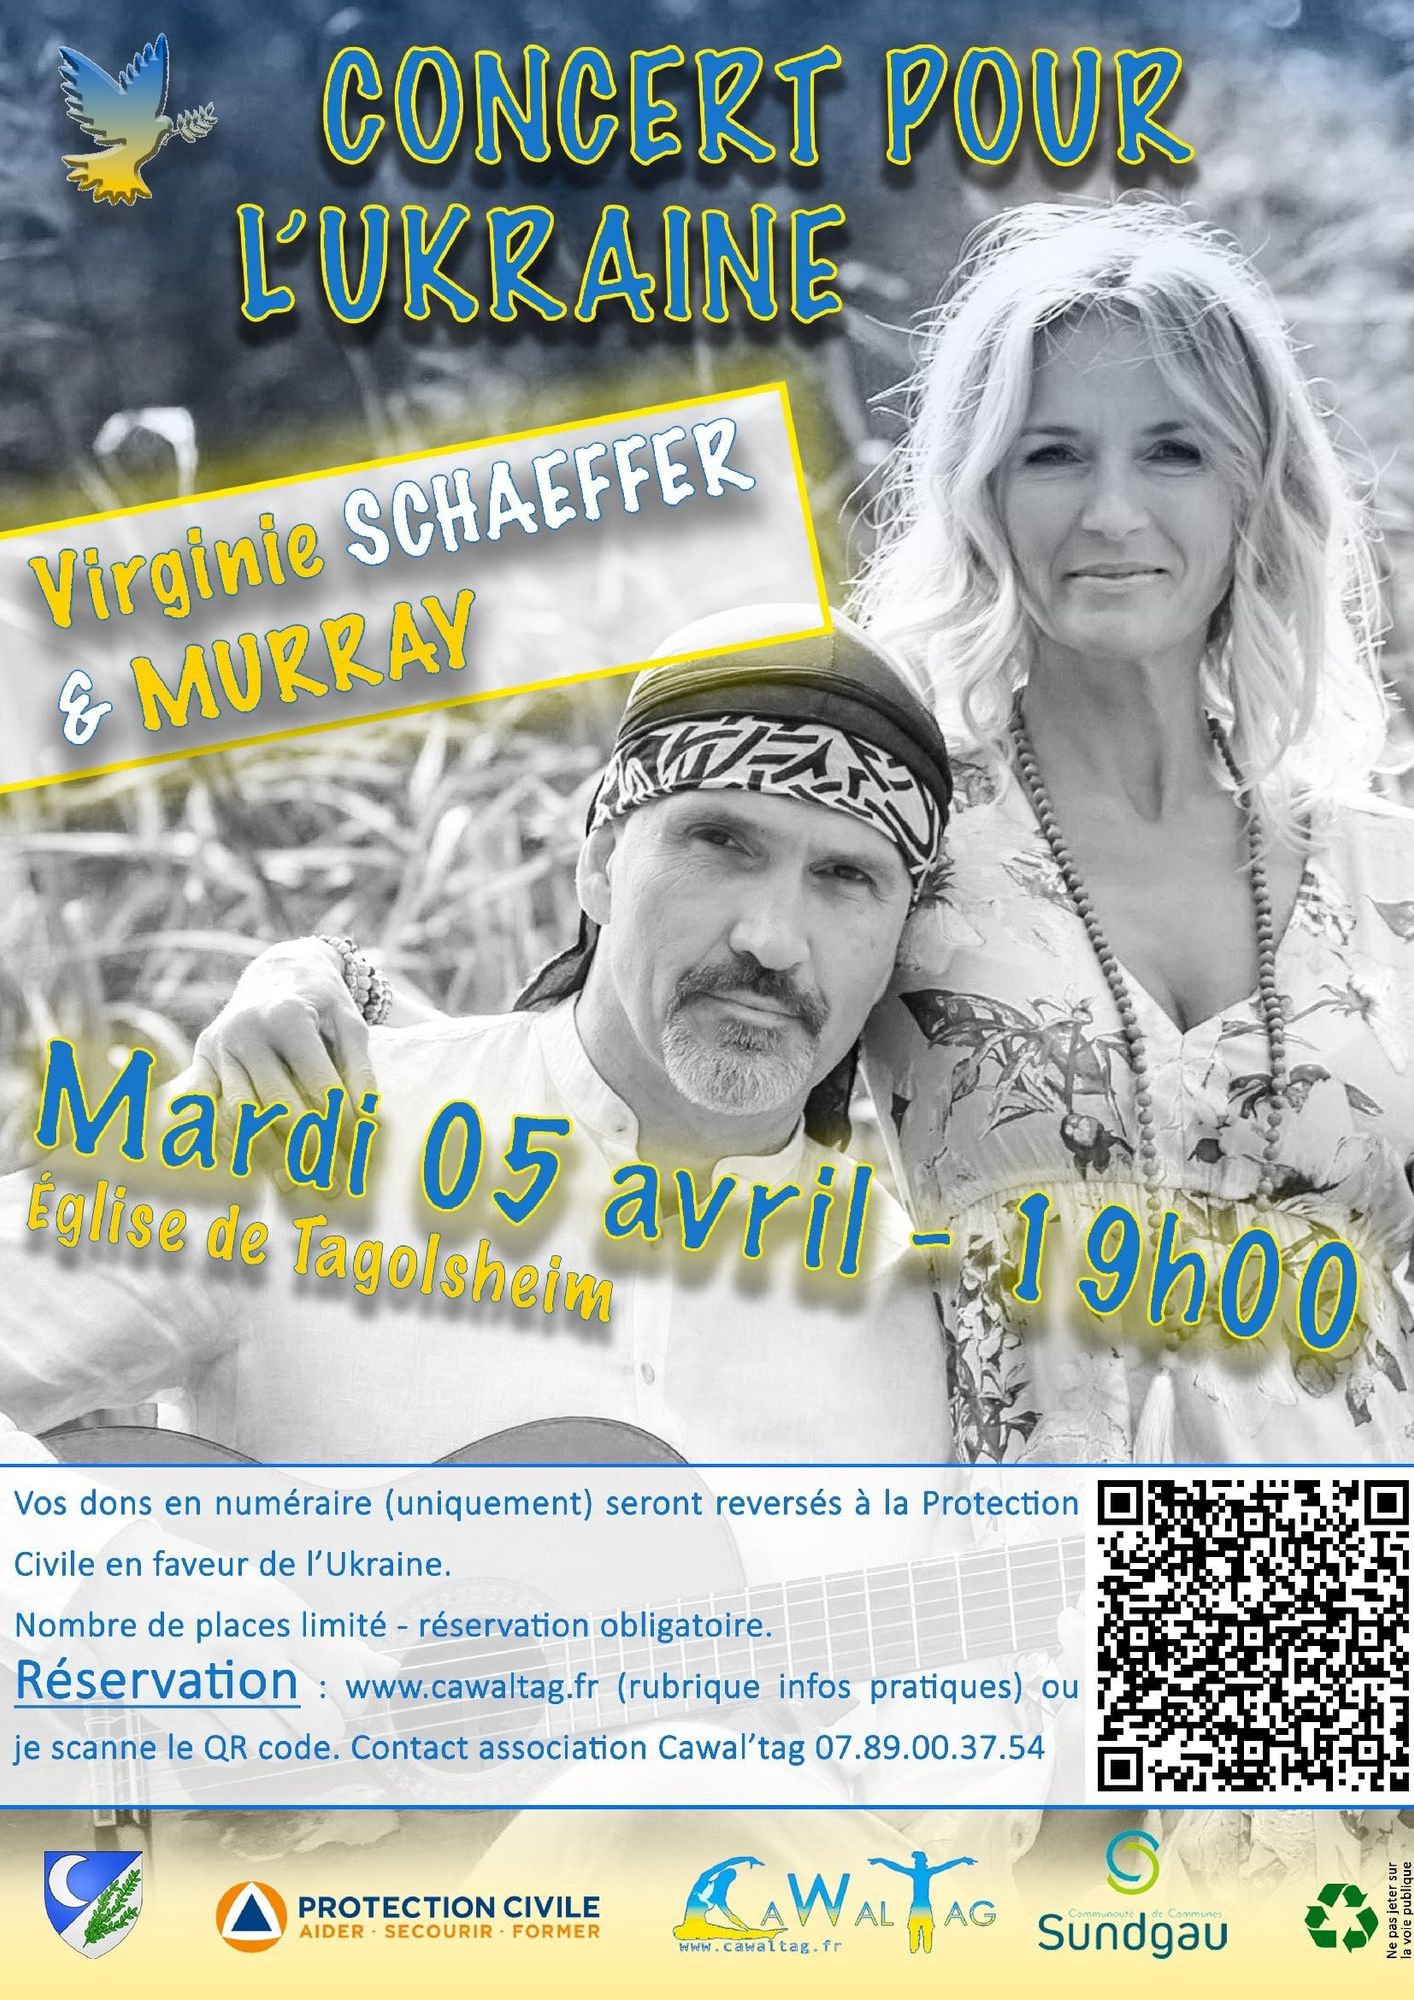 Concert 5/04 à Tagolsheim en faveur de l'Ukraine